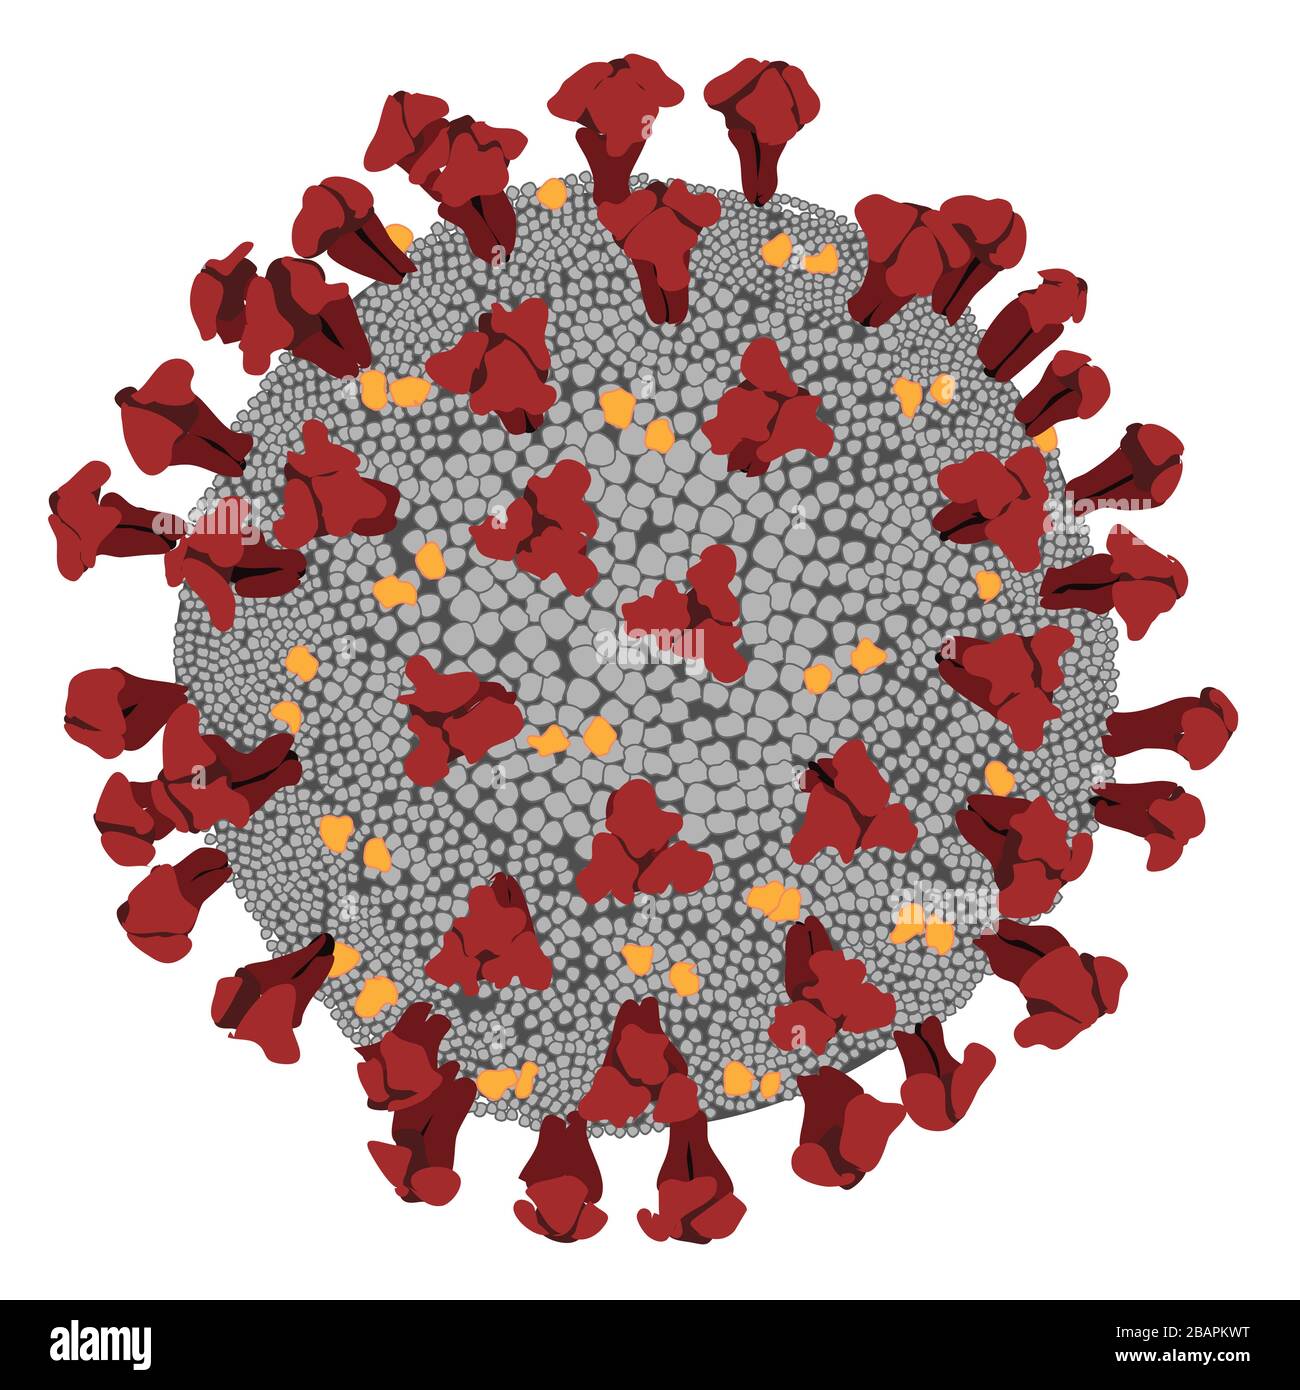 Illustrazione del coronavirus covid-19, virus epidemico. Foto Stock